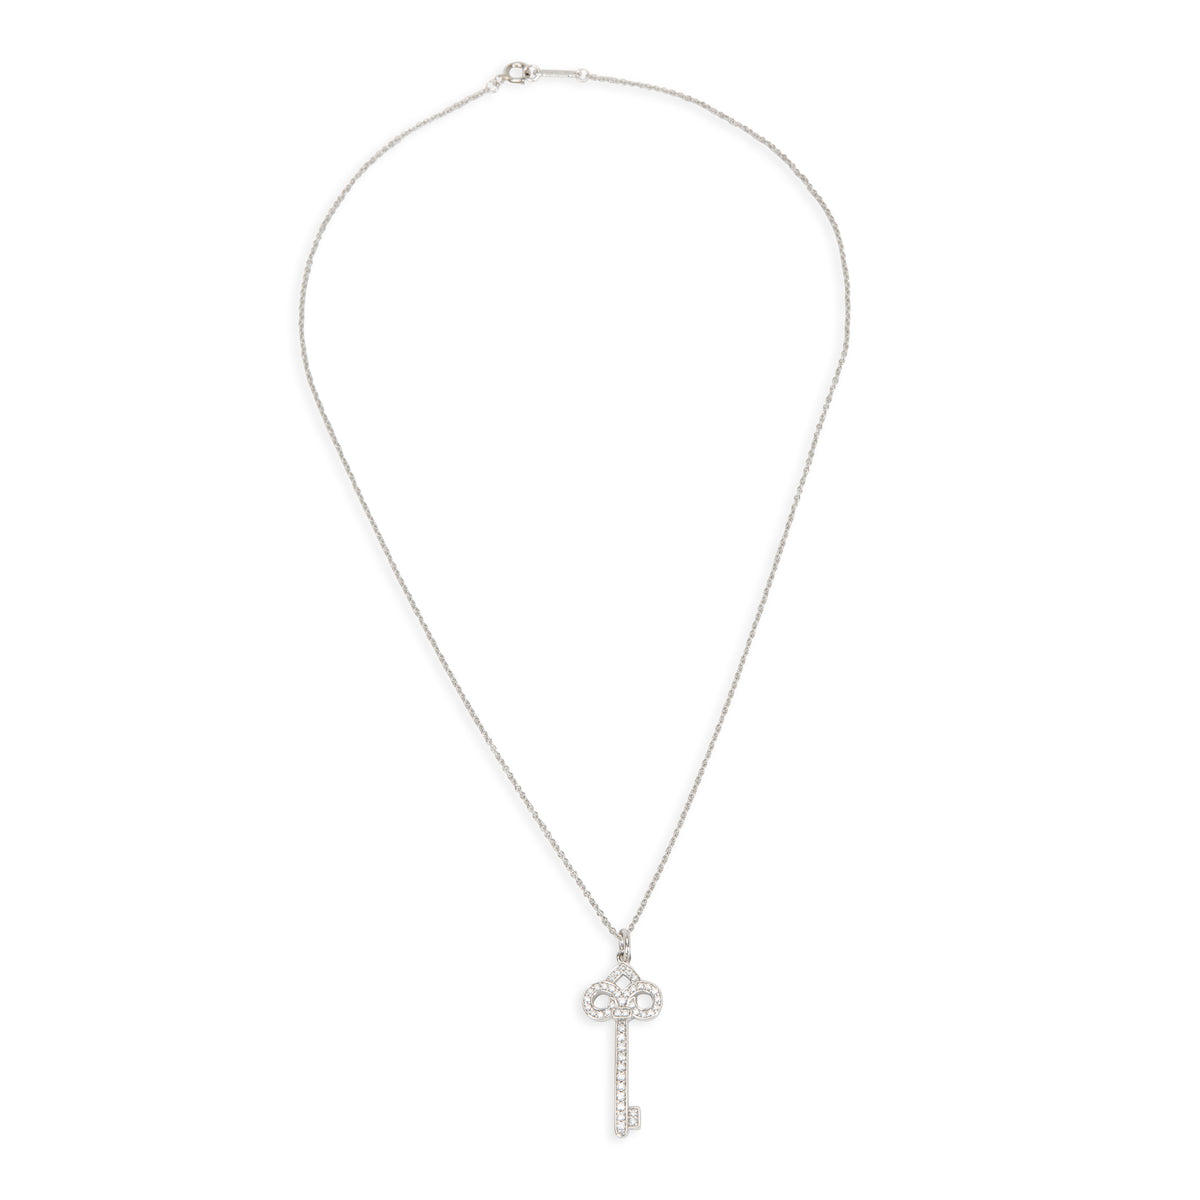 Tiffany & Co. Fleur De Lis Diamond Key Pendant Necklace in Platinum 0.12 ctw